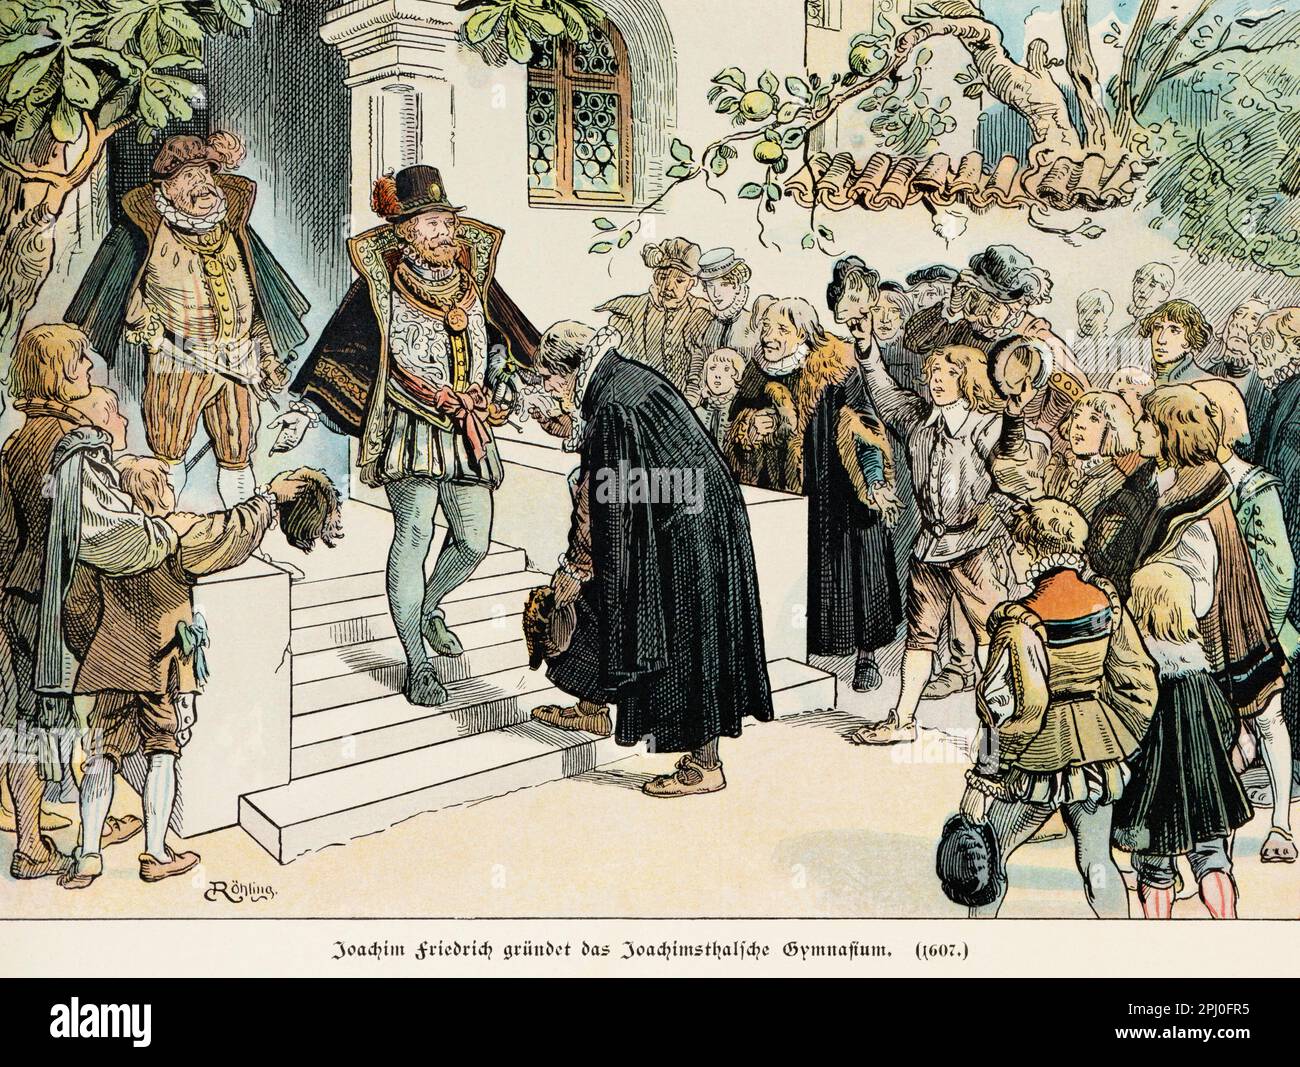 Joachim Friedrich gründet die Joachimsthal Grammarschule im Jahr 1607, Geschichte der Hohenzollerns, historische Illustration 1899 Stockfoto